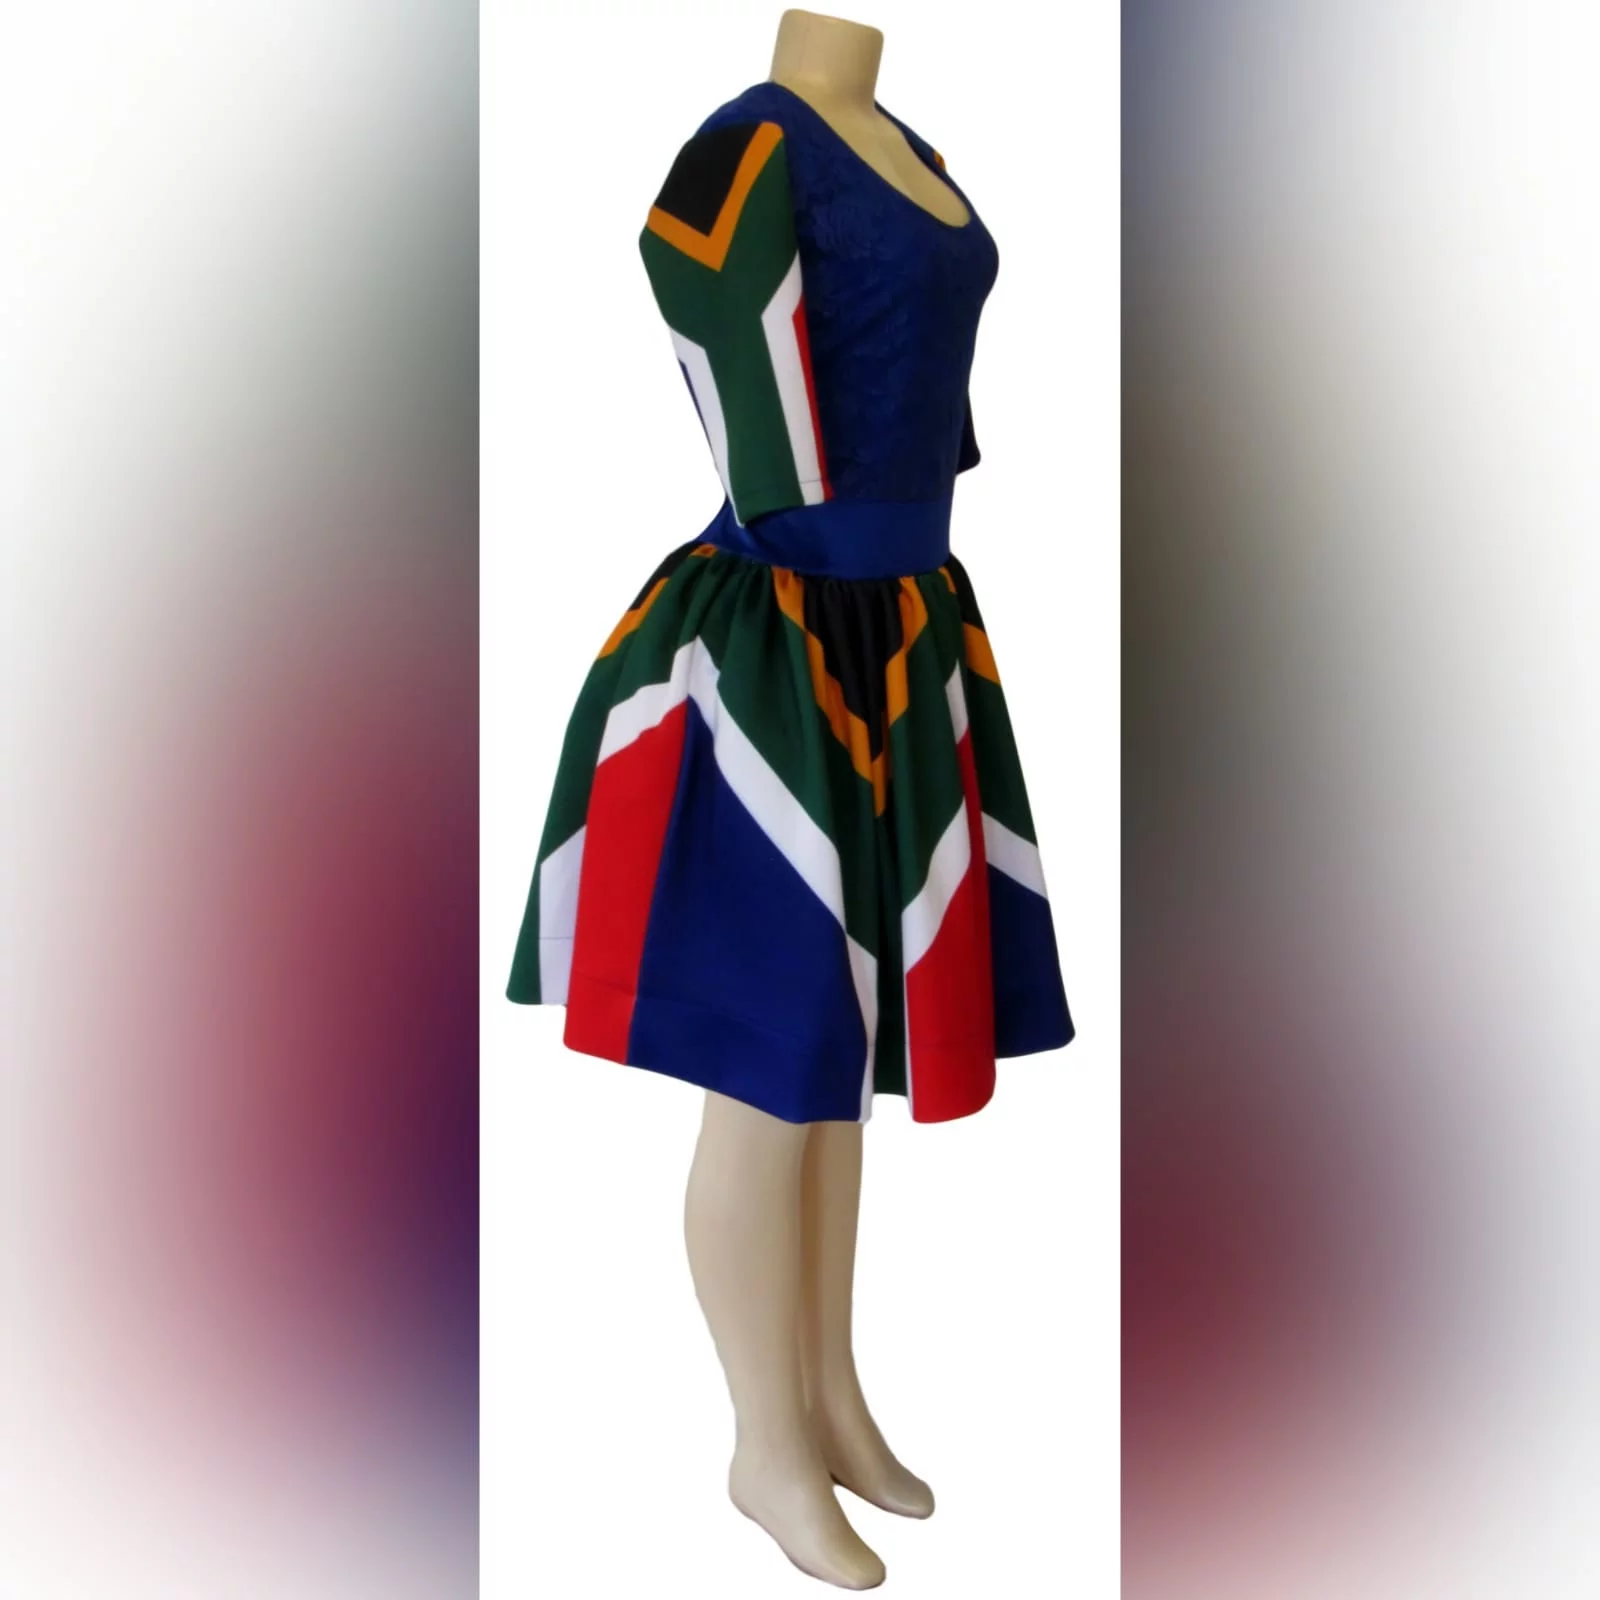 Vestido tradicional curto de bandeira com renda 5 vestido tradicional curto de bandeira de africa do sul azul roial. Com mangas de bandeira africa do sul e um corpete de renda. Vestido tradicional para a graduação.